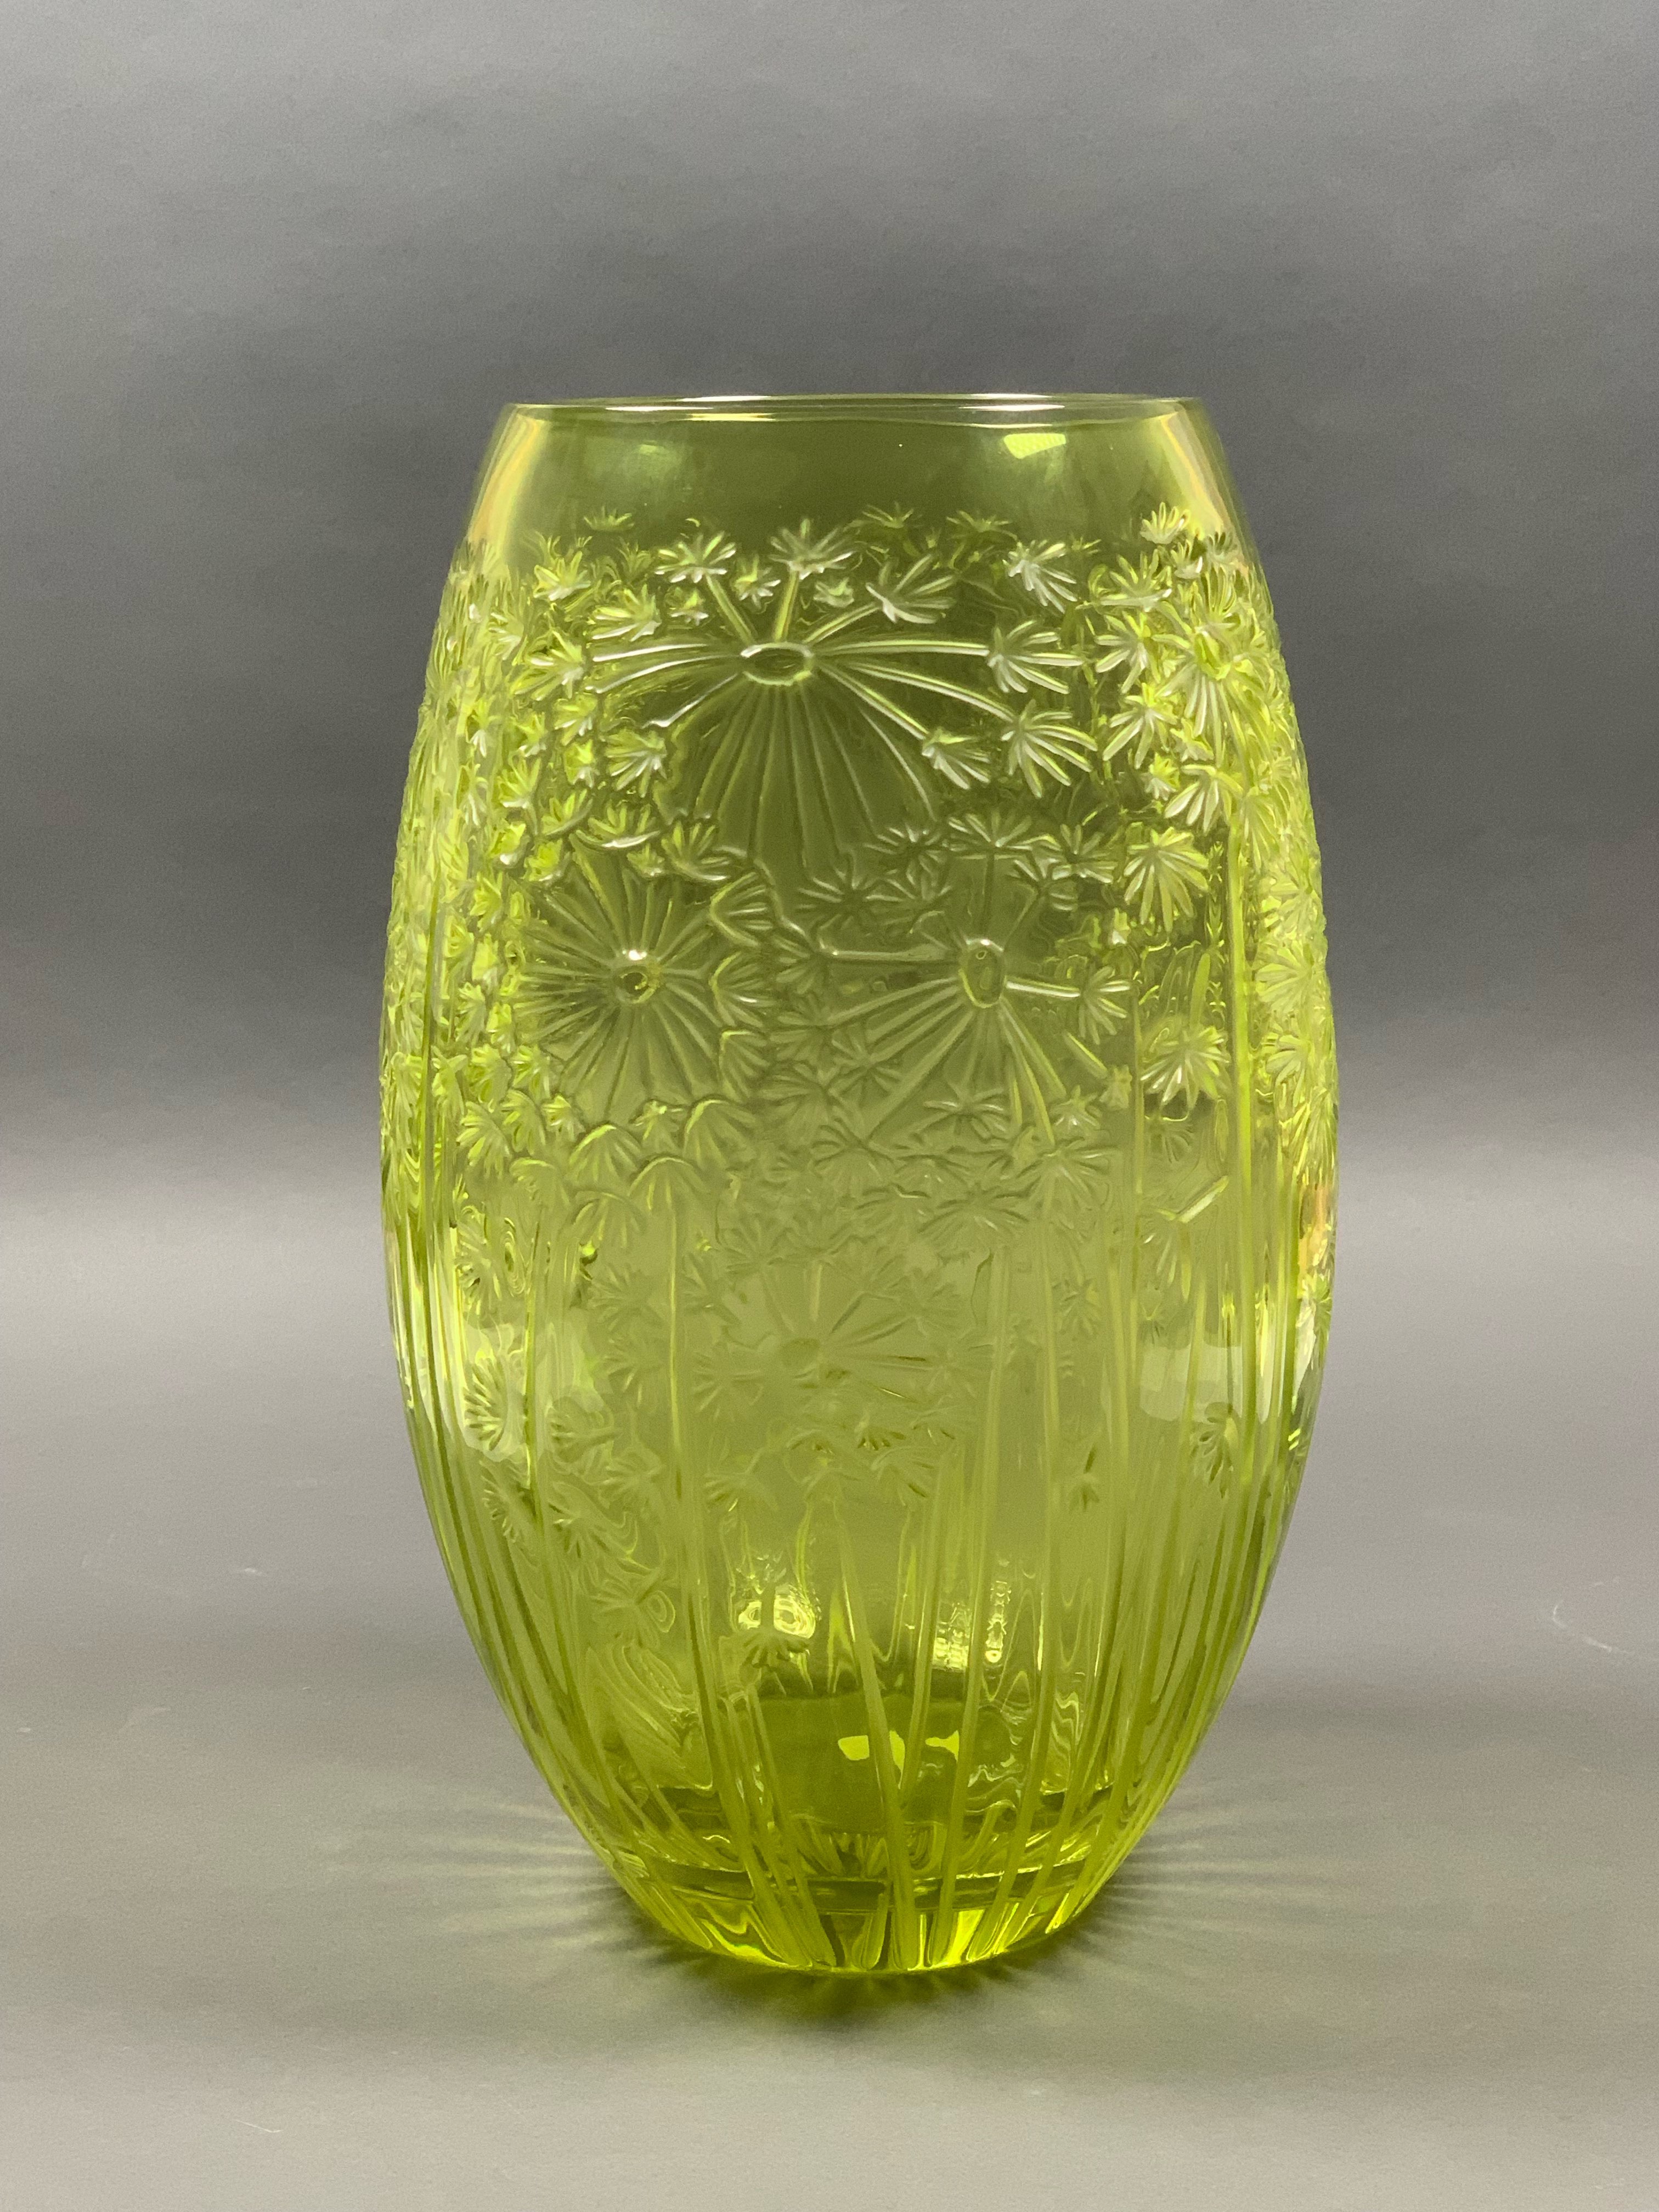 Lot 250: Large Lalique "Bucolique" Dandelion Vase